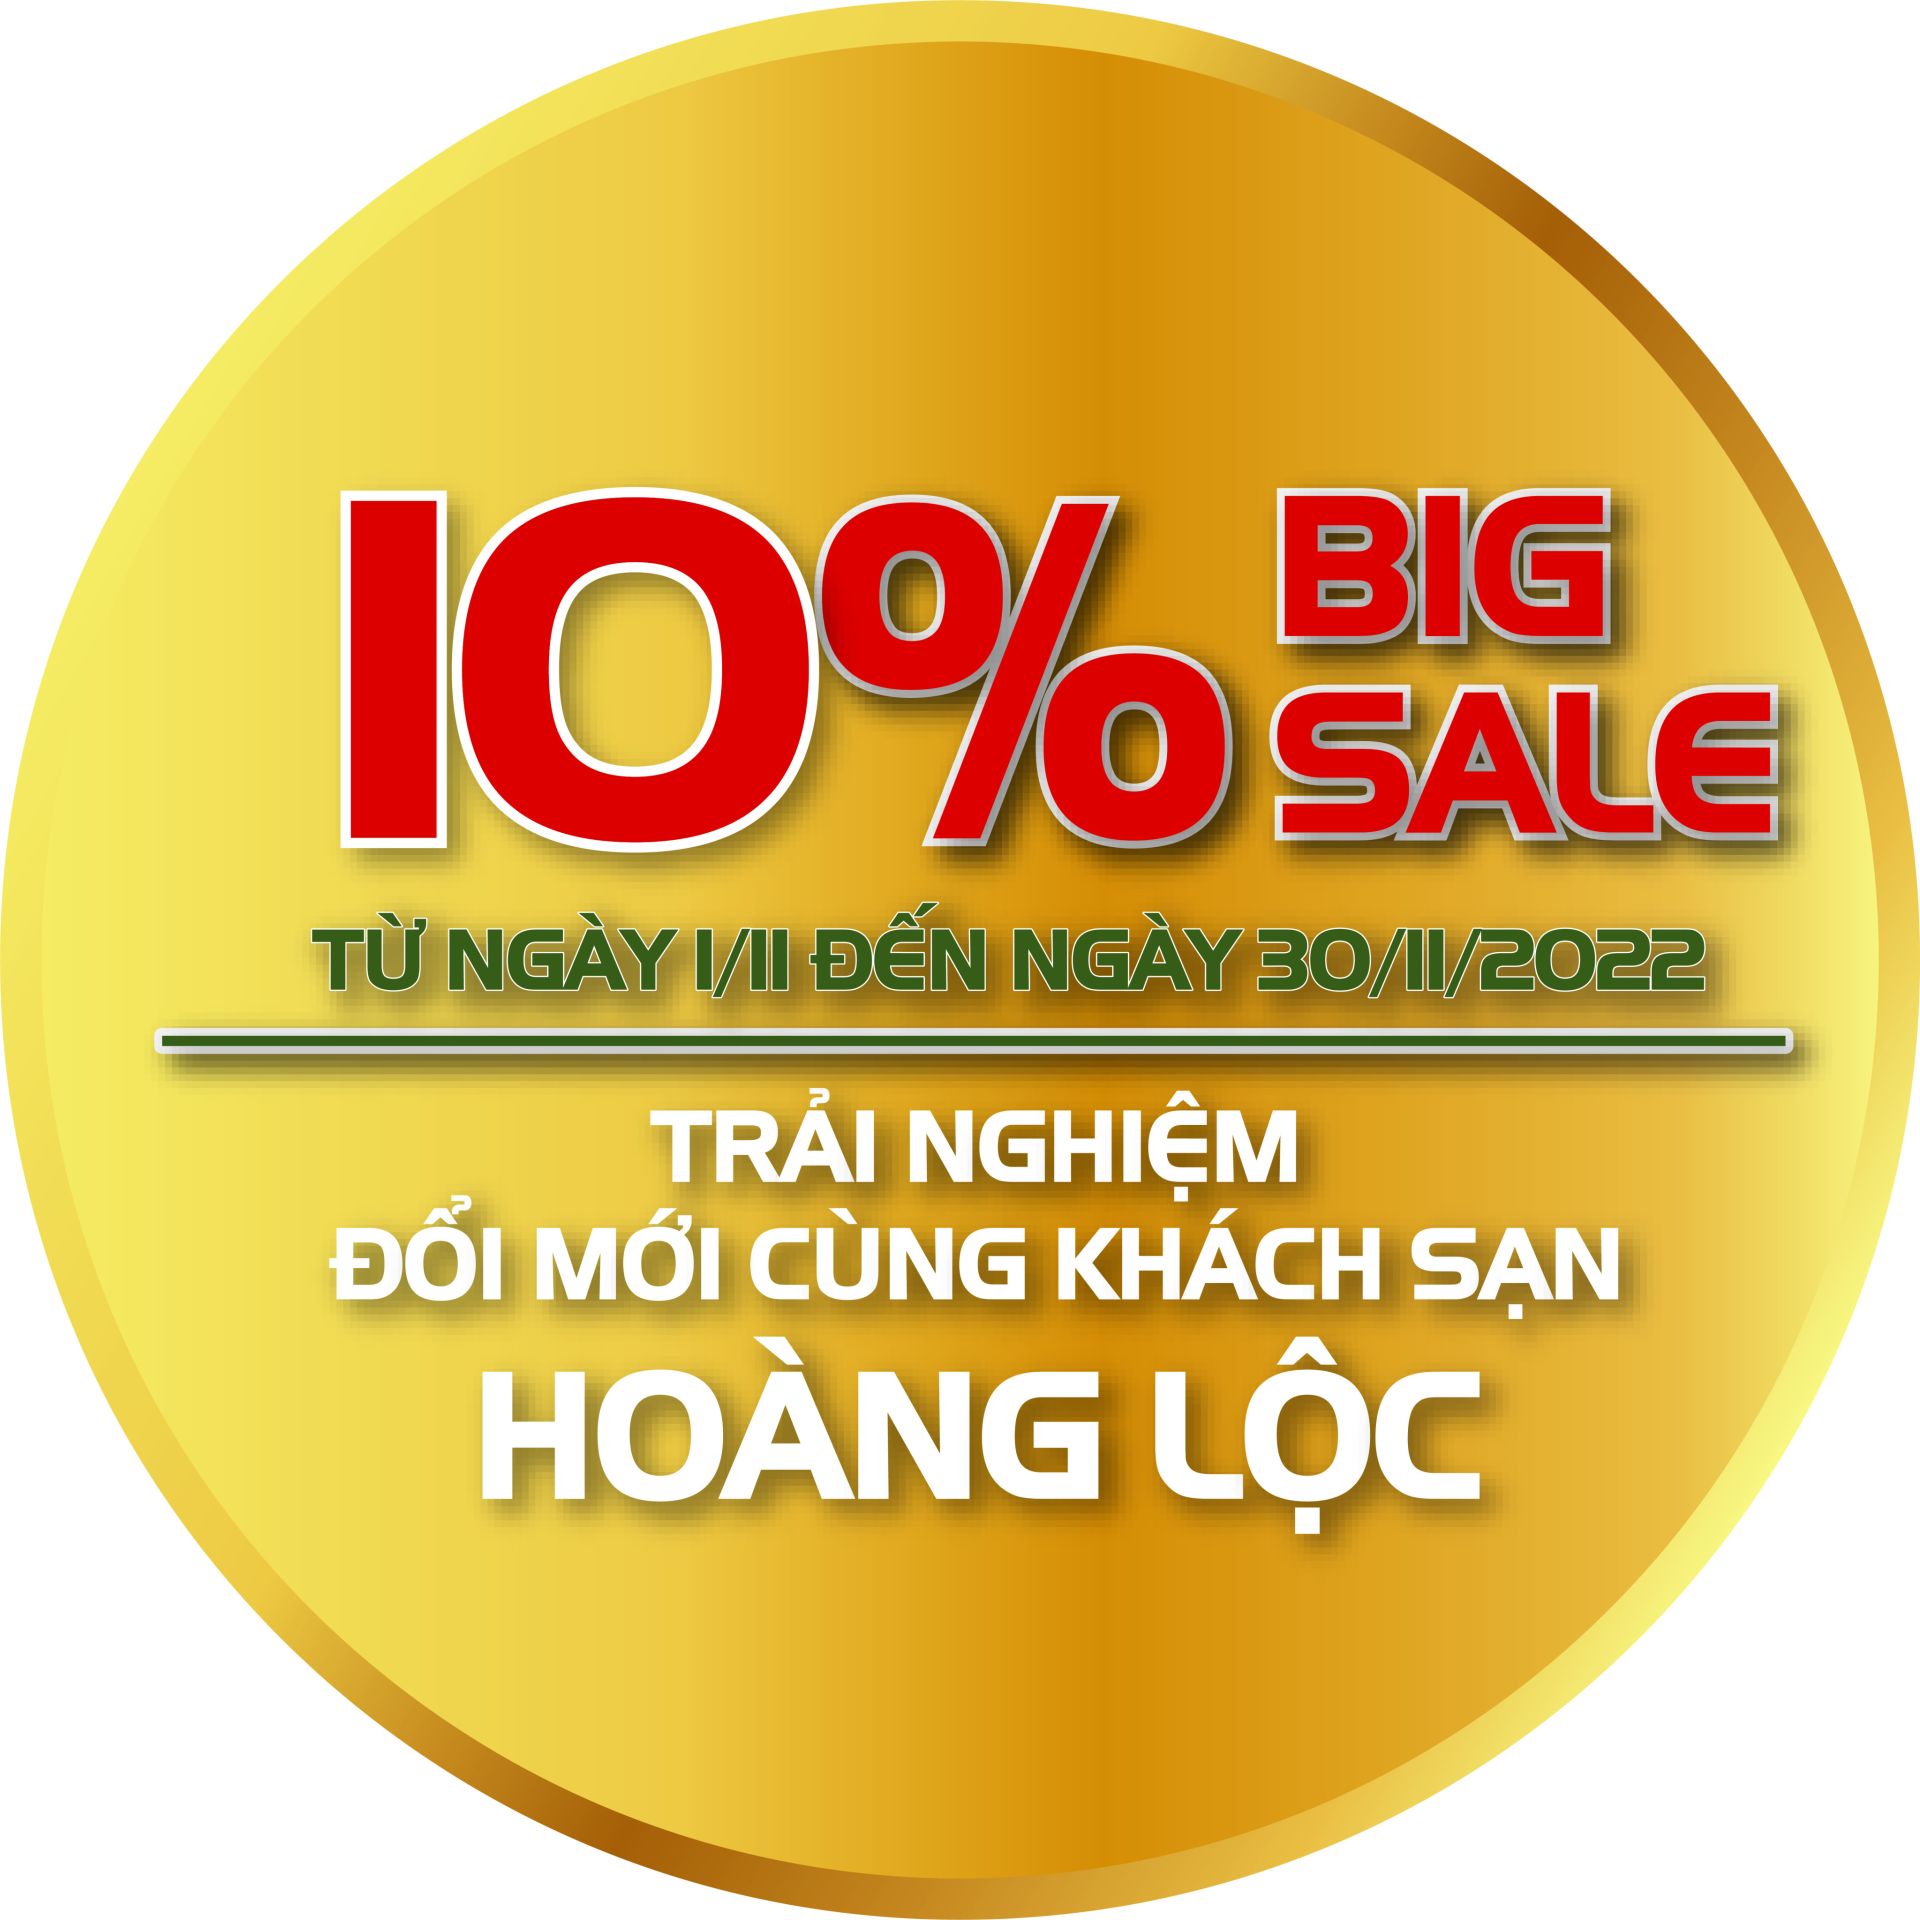 Chương trình BIGSALE giảm 10% từ 01.11.2022 đến 30.11.2022 cùng Hoàng Lộc Hotel